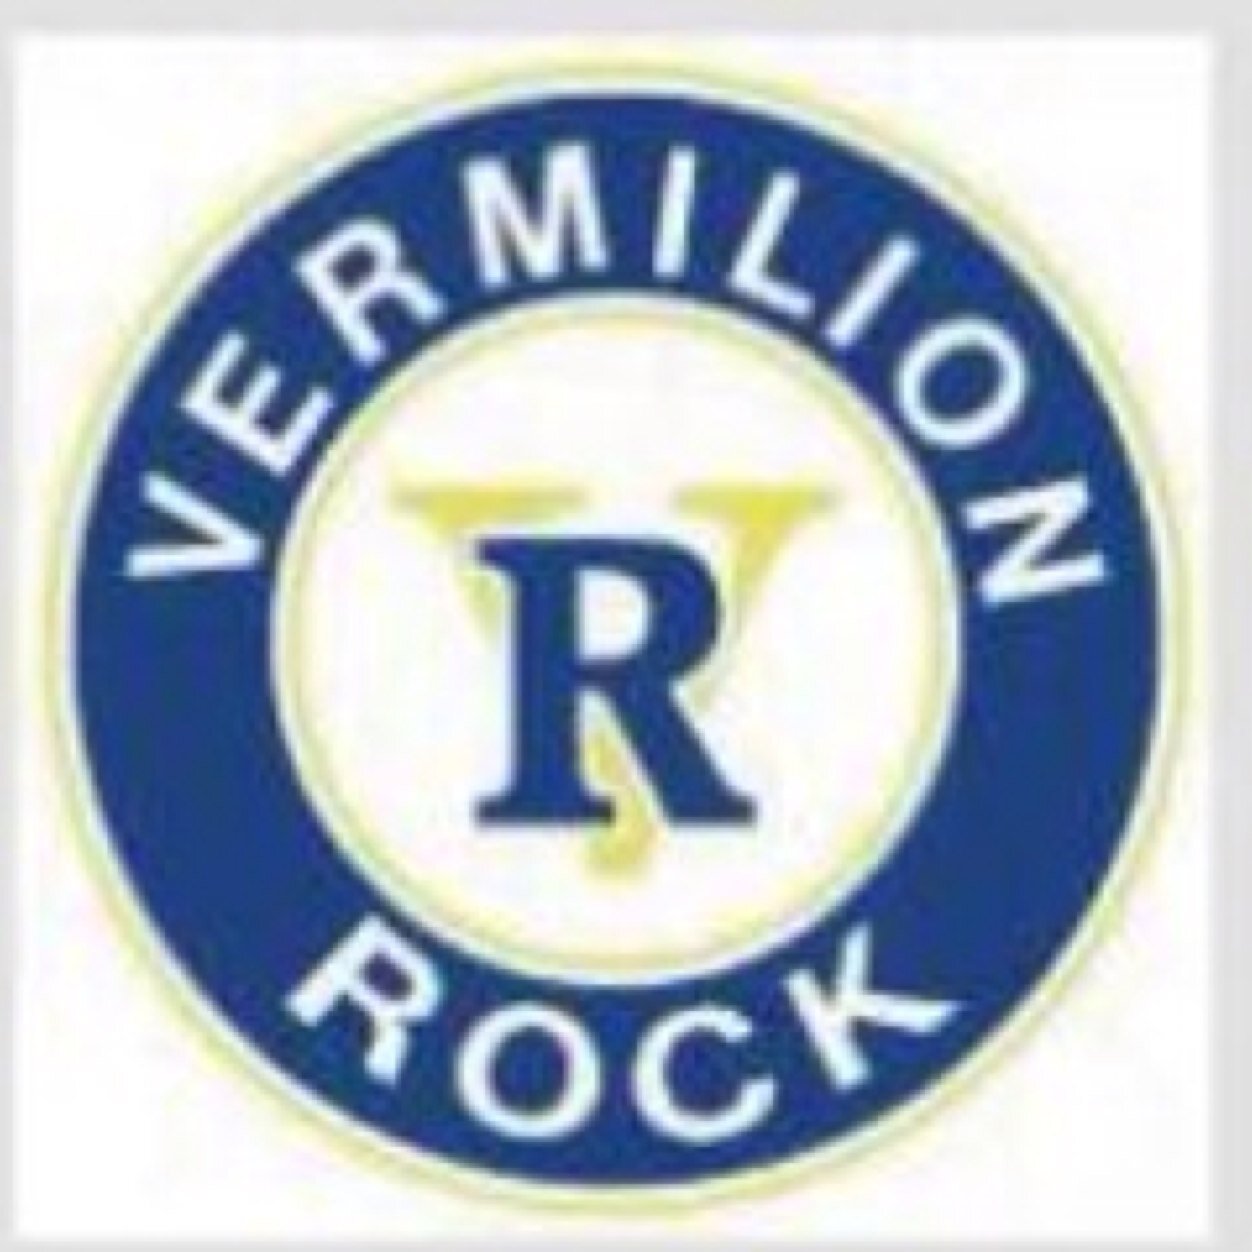 Vermilion Rock